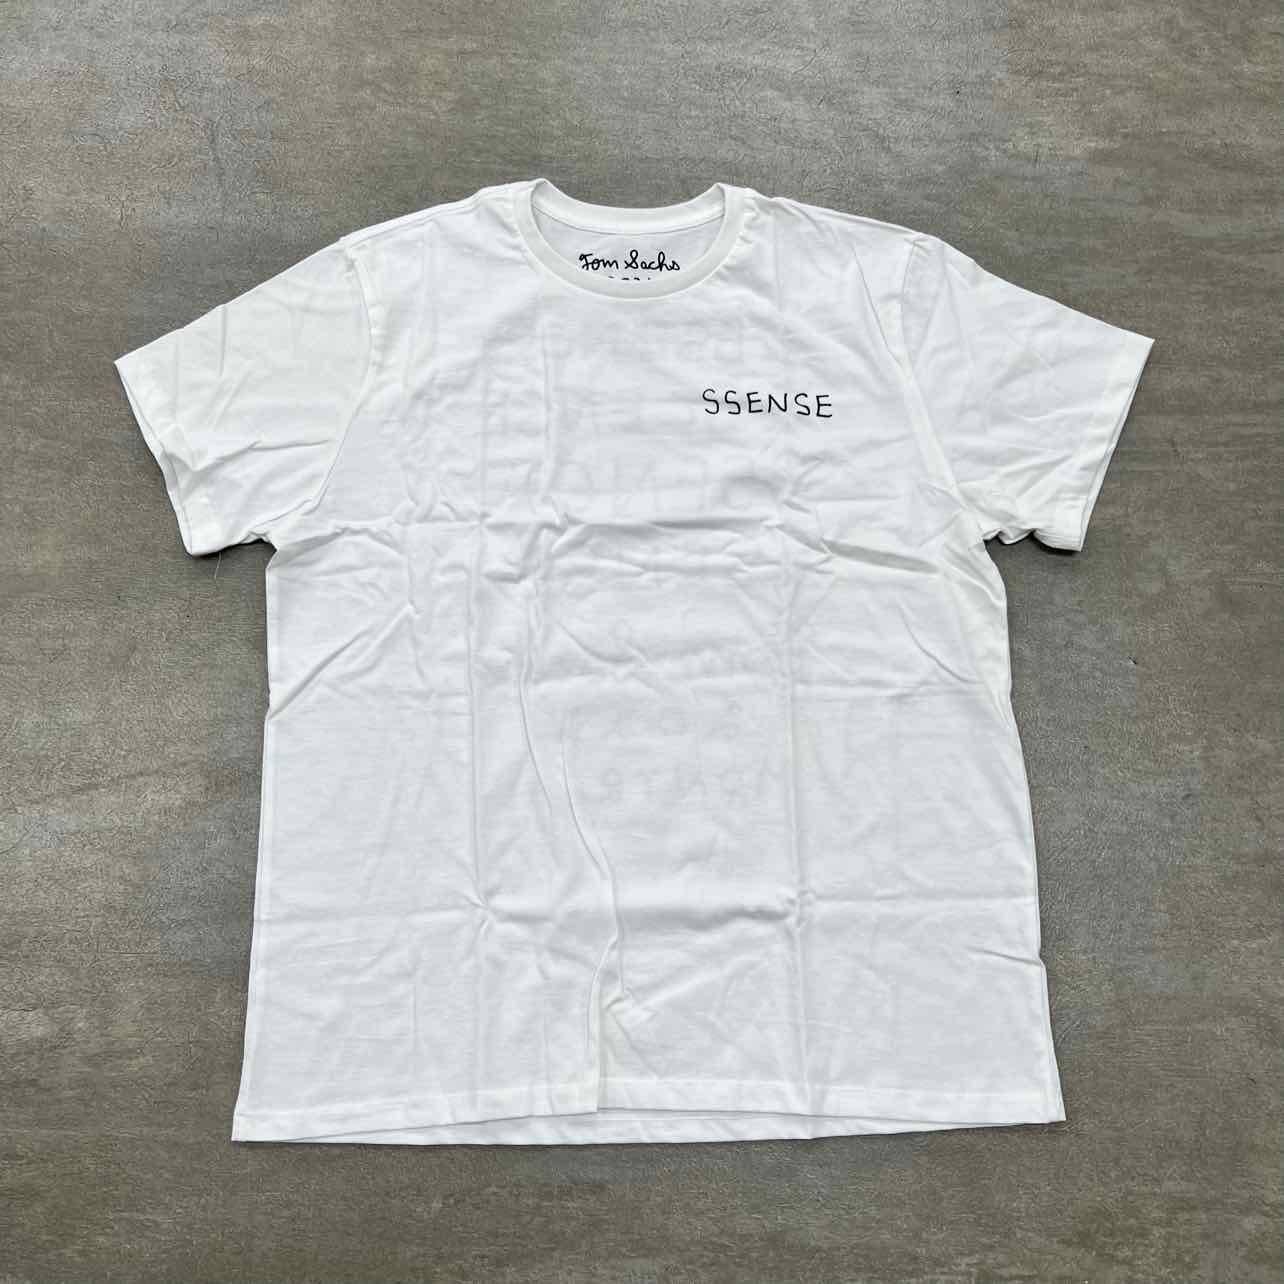 Tom Sachs T-Shirt "SSENSE" White New Size M